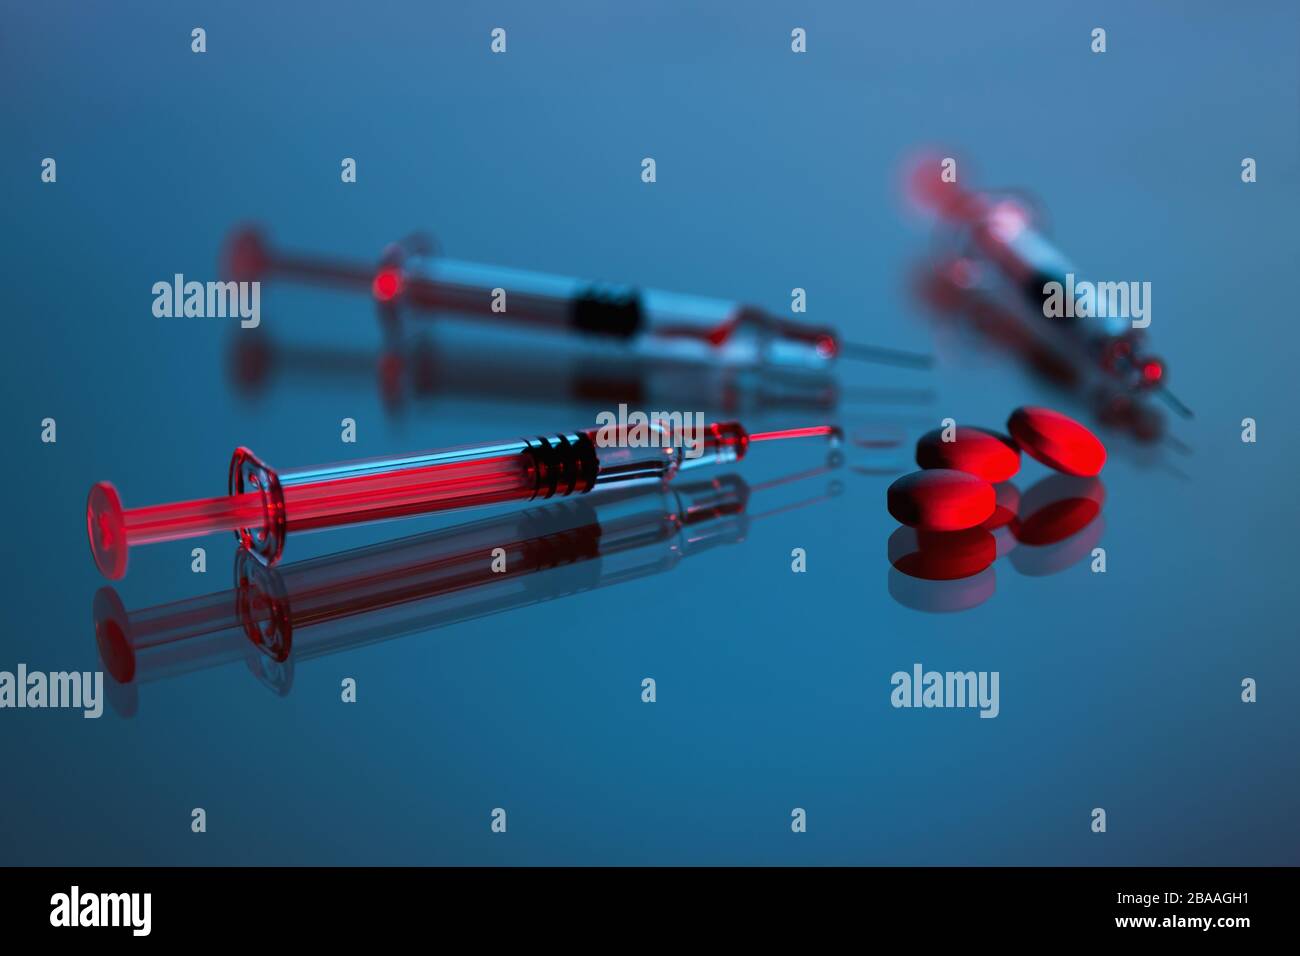 Spritzen, Tabletten, Desinfektionsmittel und Virenschutzmaske auf dunklem Hintergrund, Impfstoff gegen den Covid-19-Corona-Virus und Medikamente Stockfoto